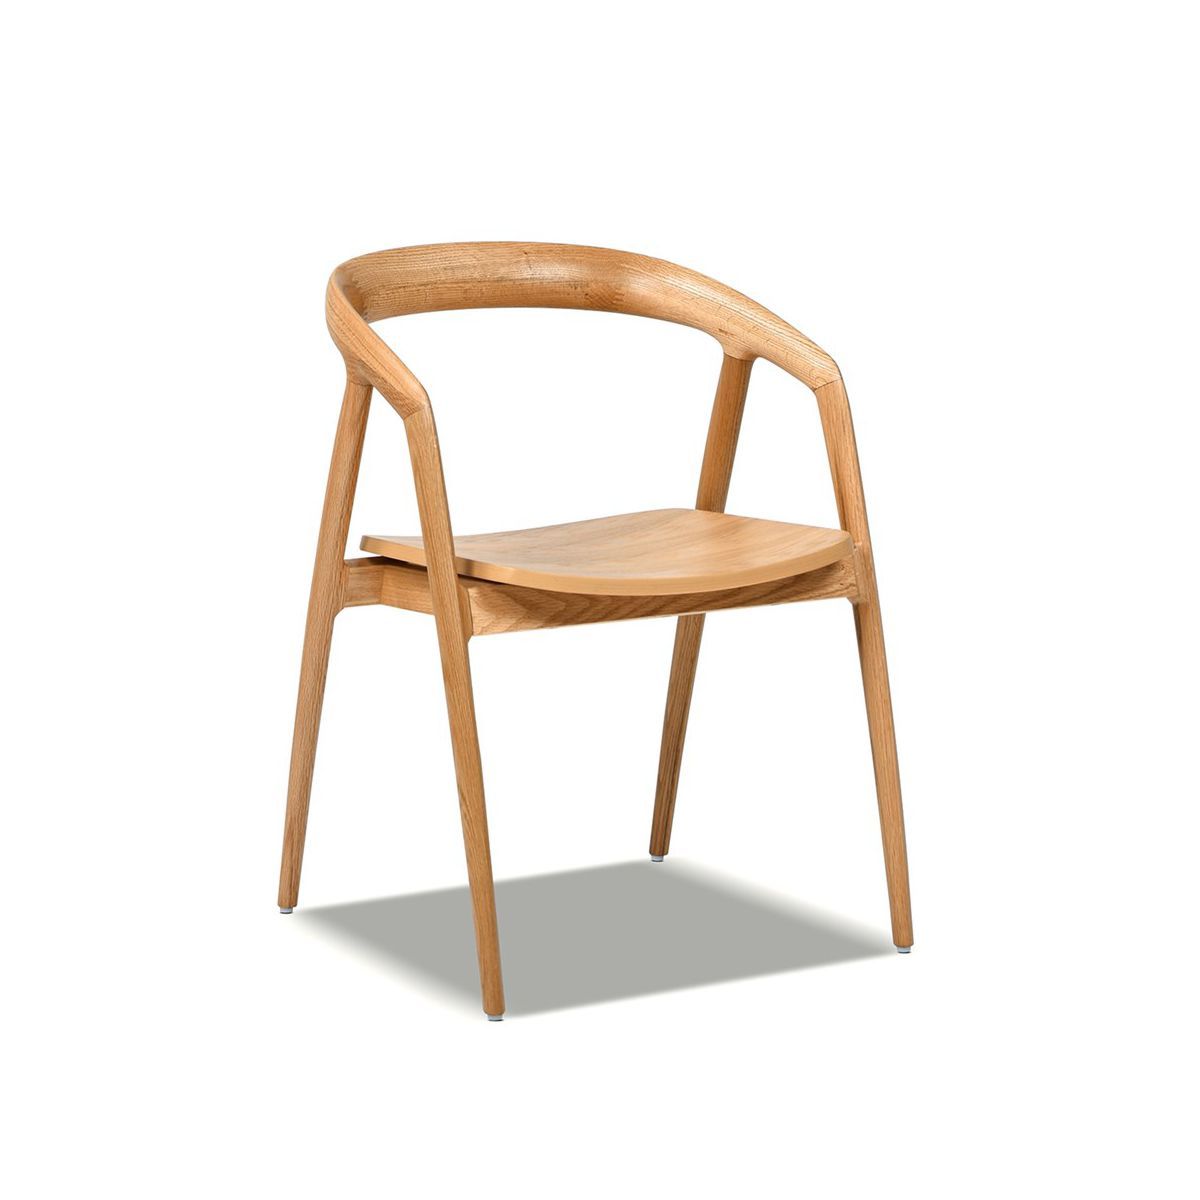 Simeon 21" Scandinavian Sculpted Oak Wood Dining Chair, Warm Natural Brown Oak Wood | Target